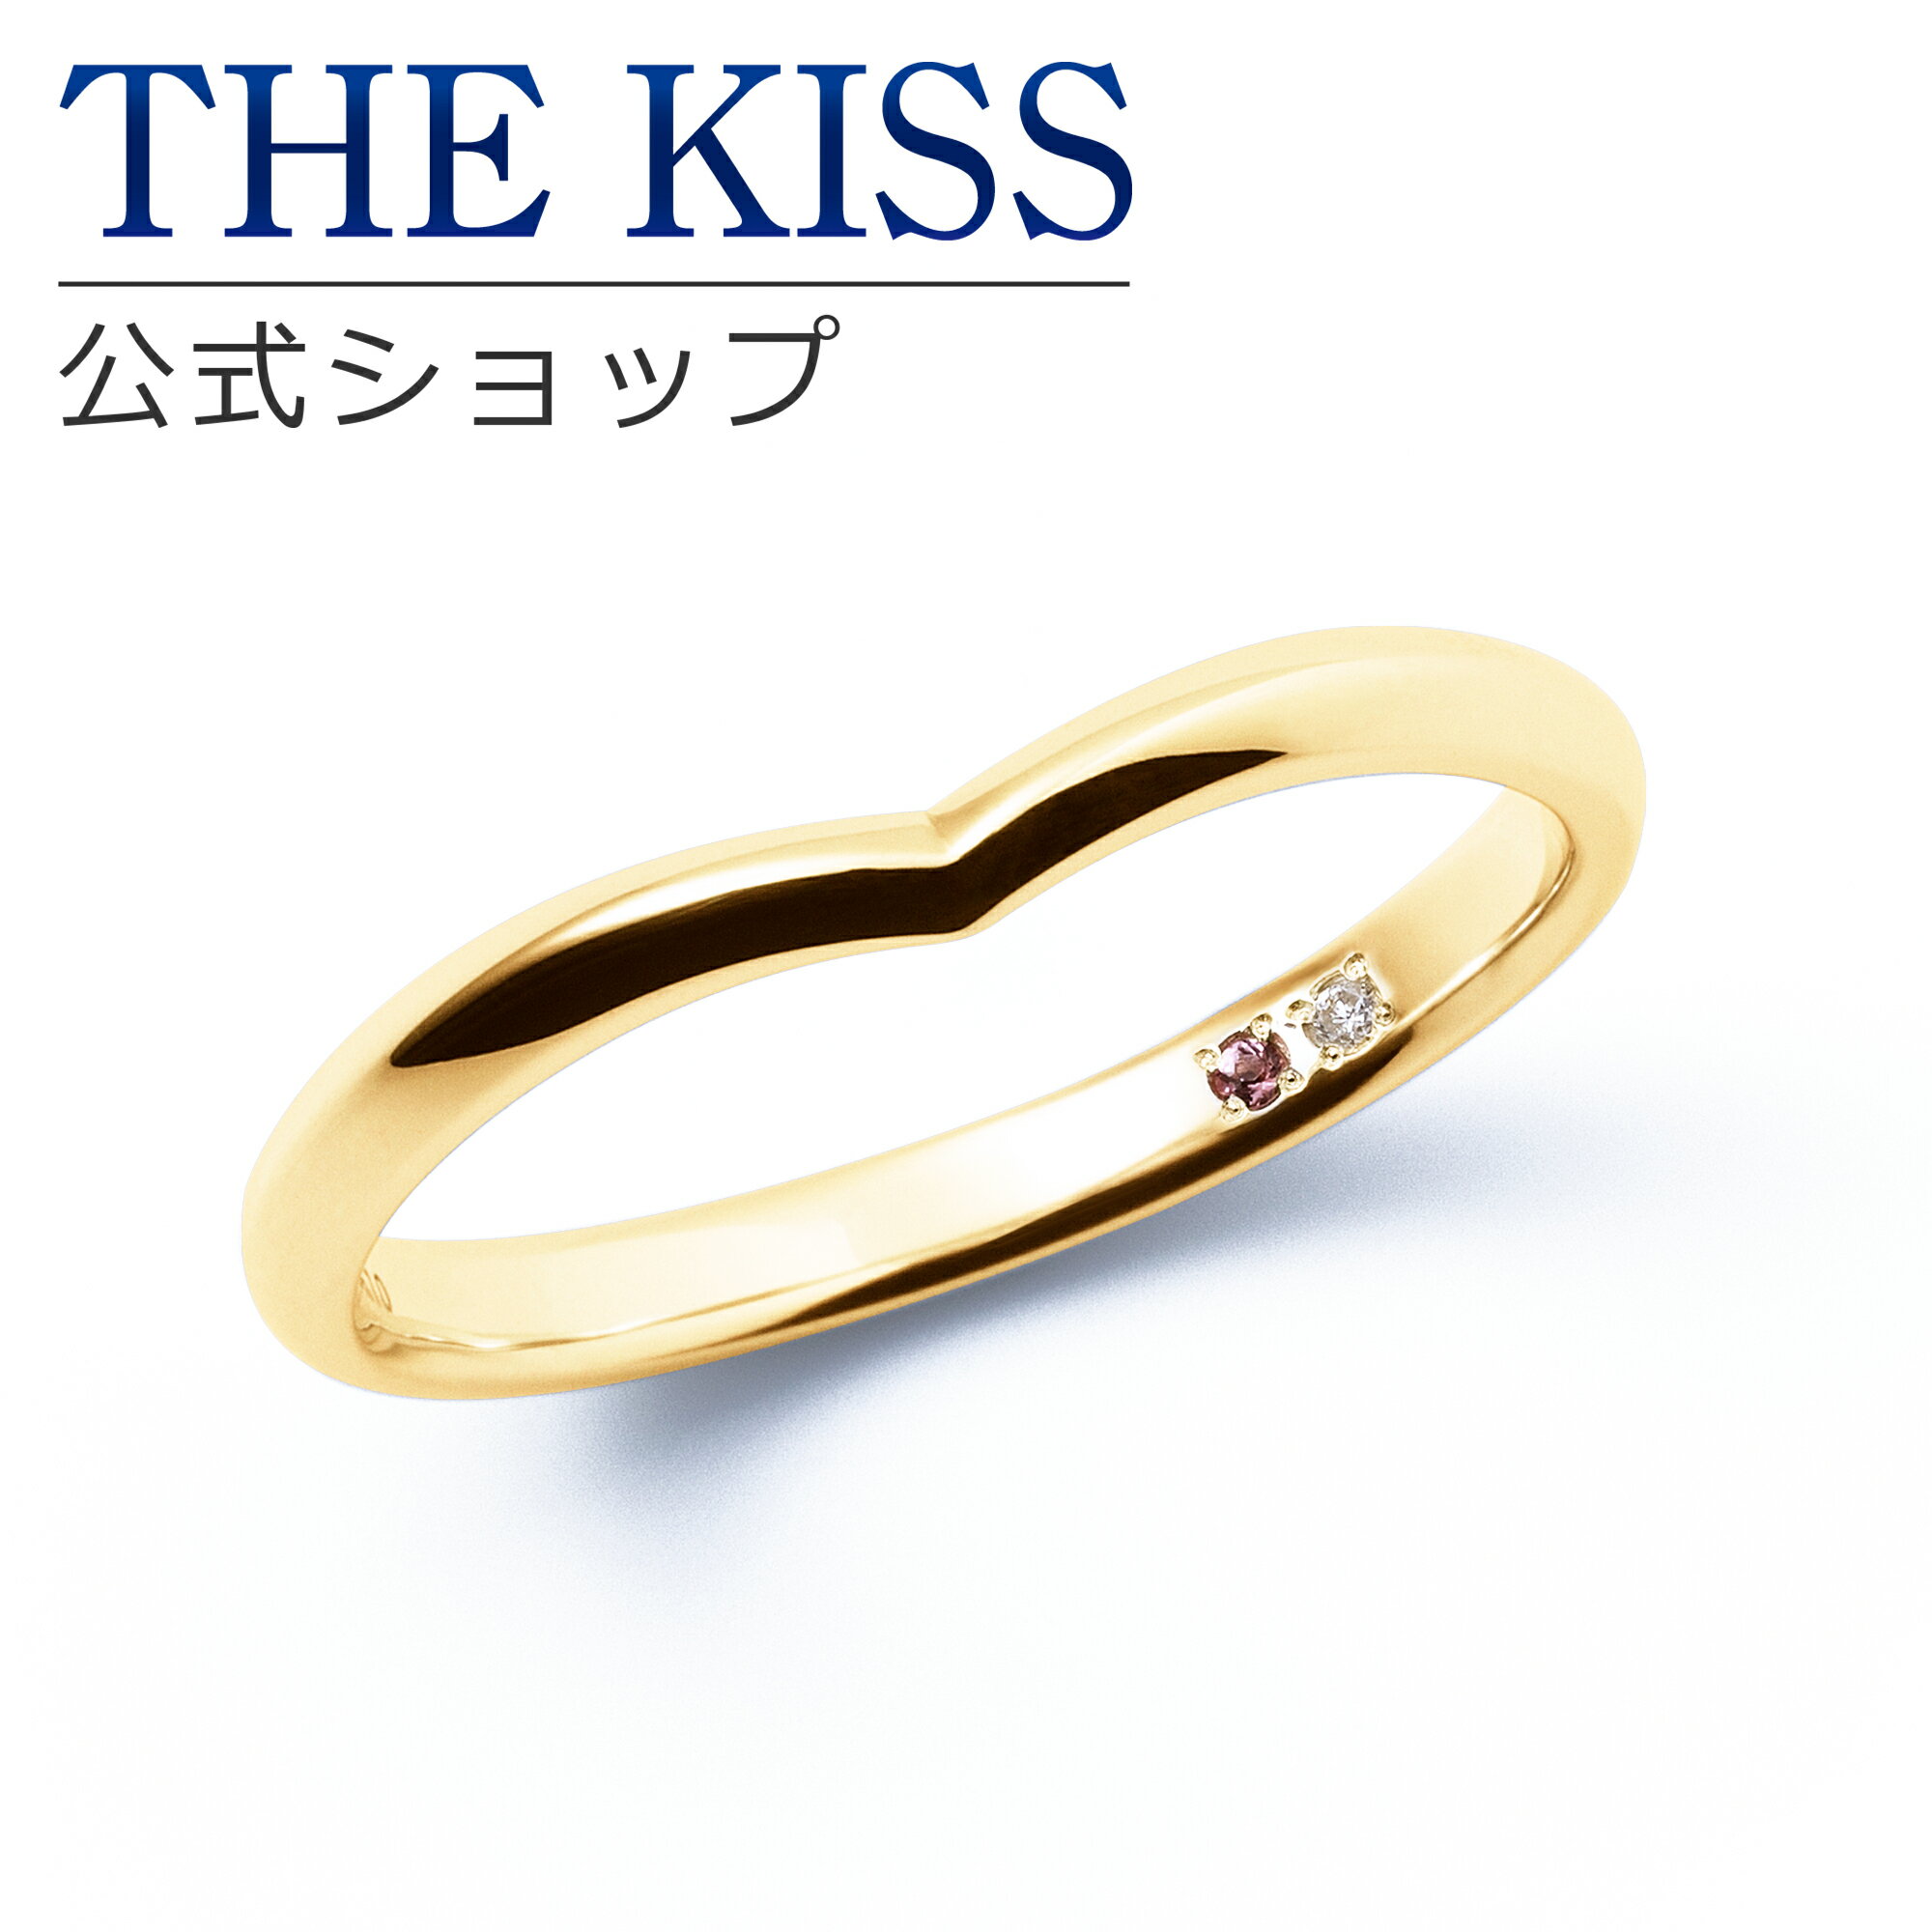 【ラッピング無料】【刻印無料】【THE KISS Anniversary】 THE KISS 公式ショップ K10 イエローゴールド マリッジ リング 結婚指輪 ペアリング メンズ 単品 yg カップル 人気 ジュエリーブランド THEKISS ザキッス 指輪 7581122002A 誕生石 シンプル 女性 ブライダル